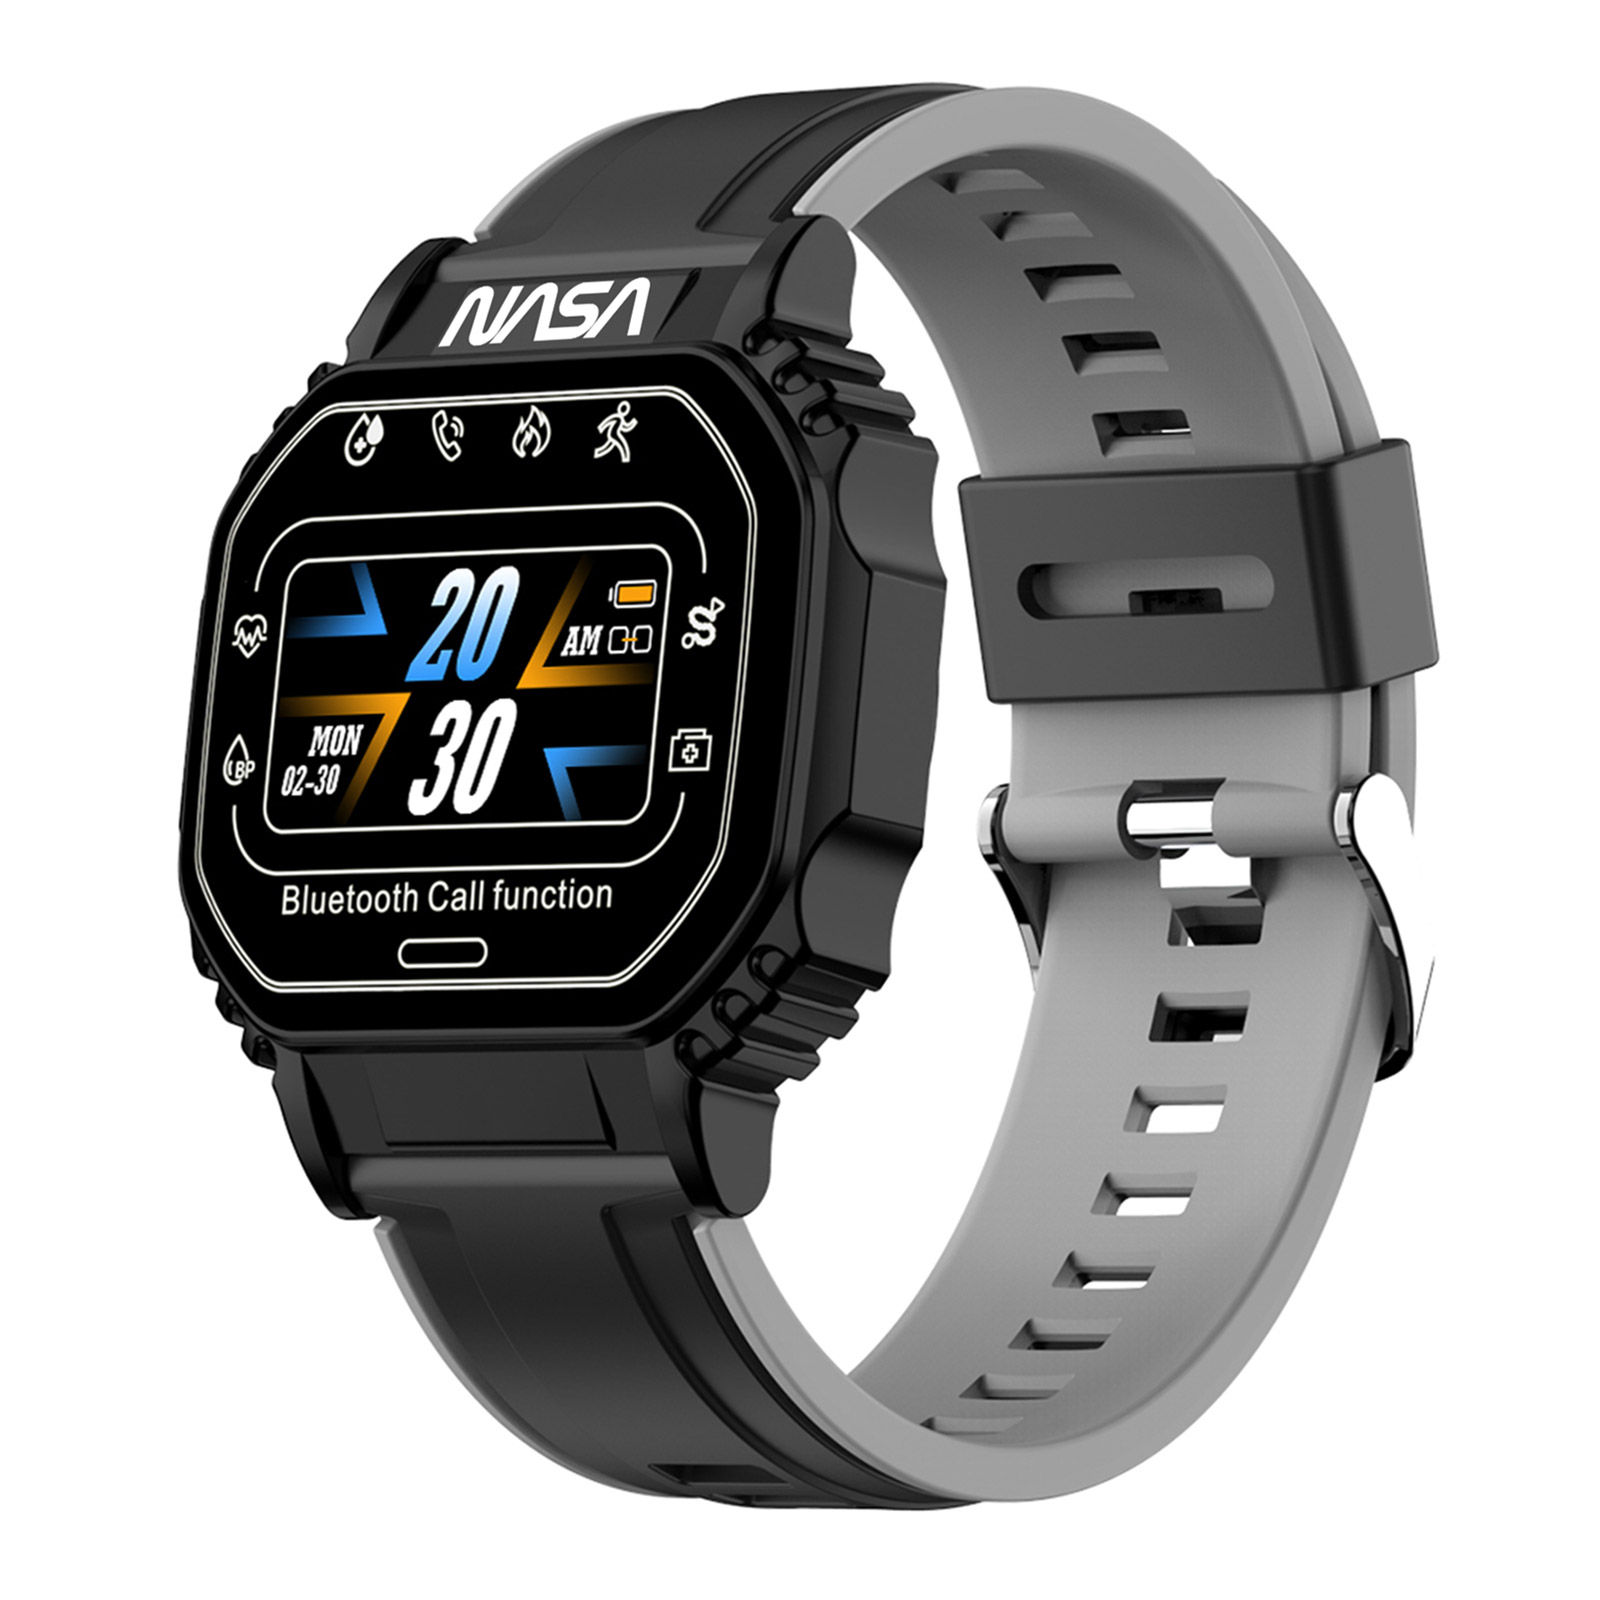 Nasa Smart Watch BNA30159-001 - svart/grön